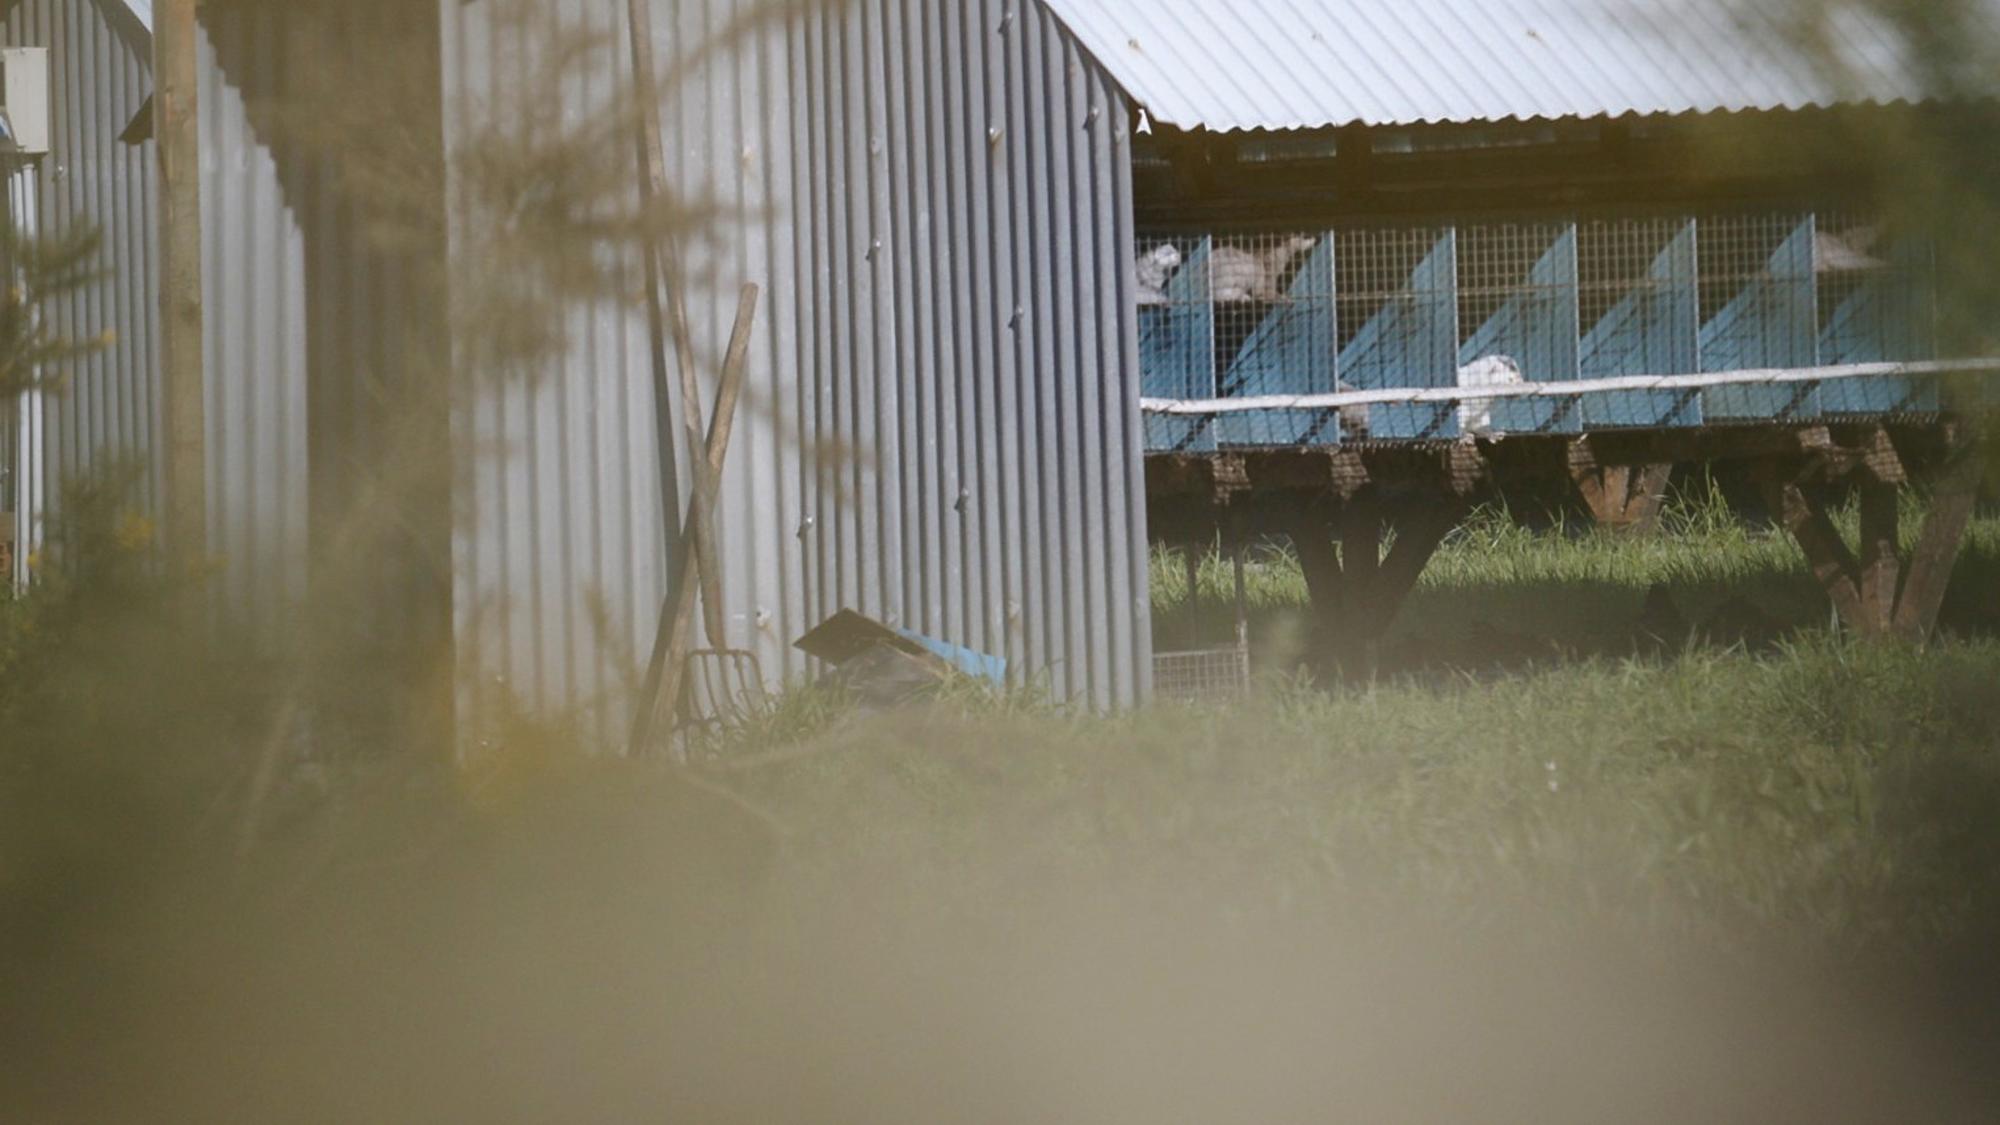 Brote de gripe aviar en una granja gallega 2jaulas al aire libre 